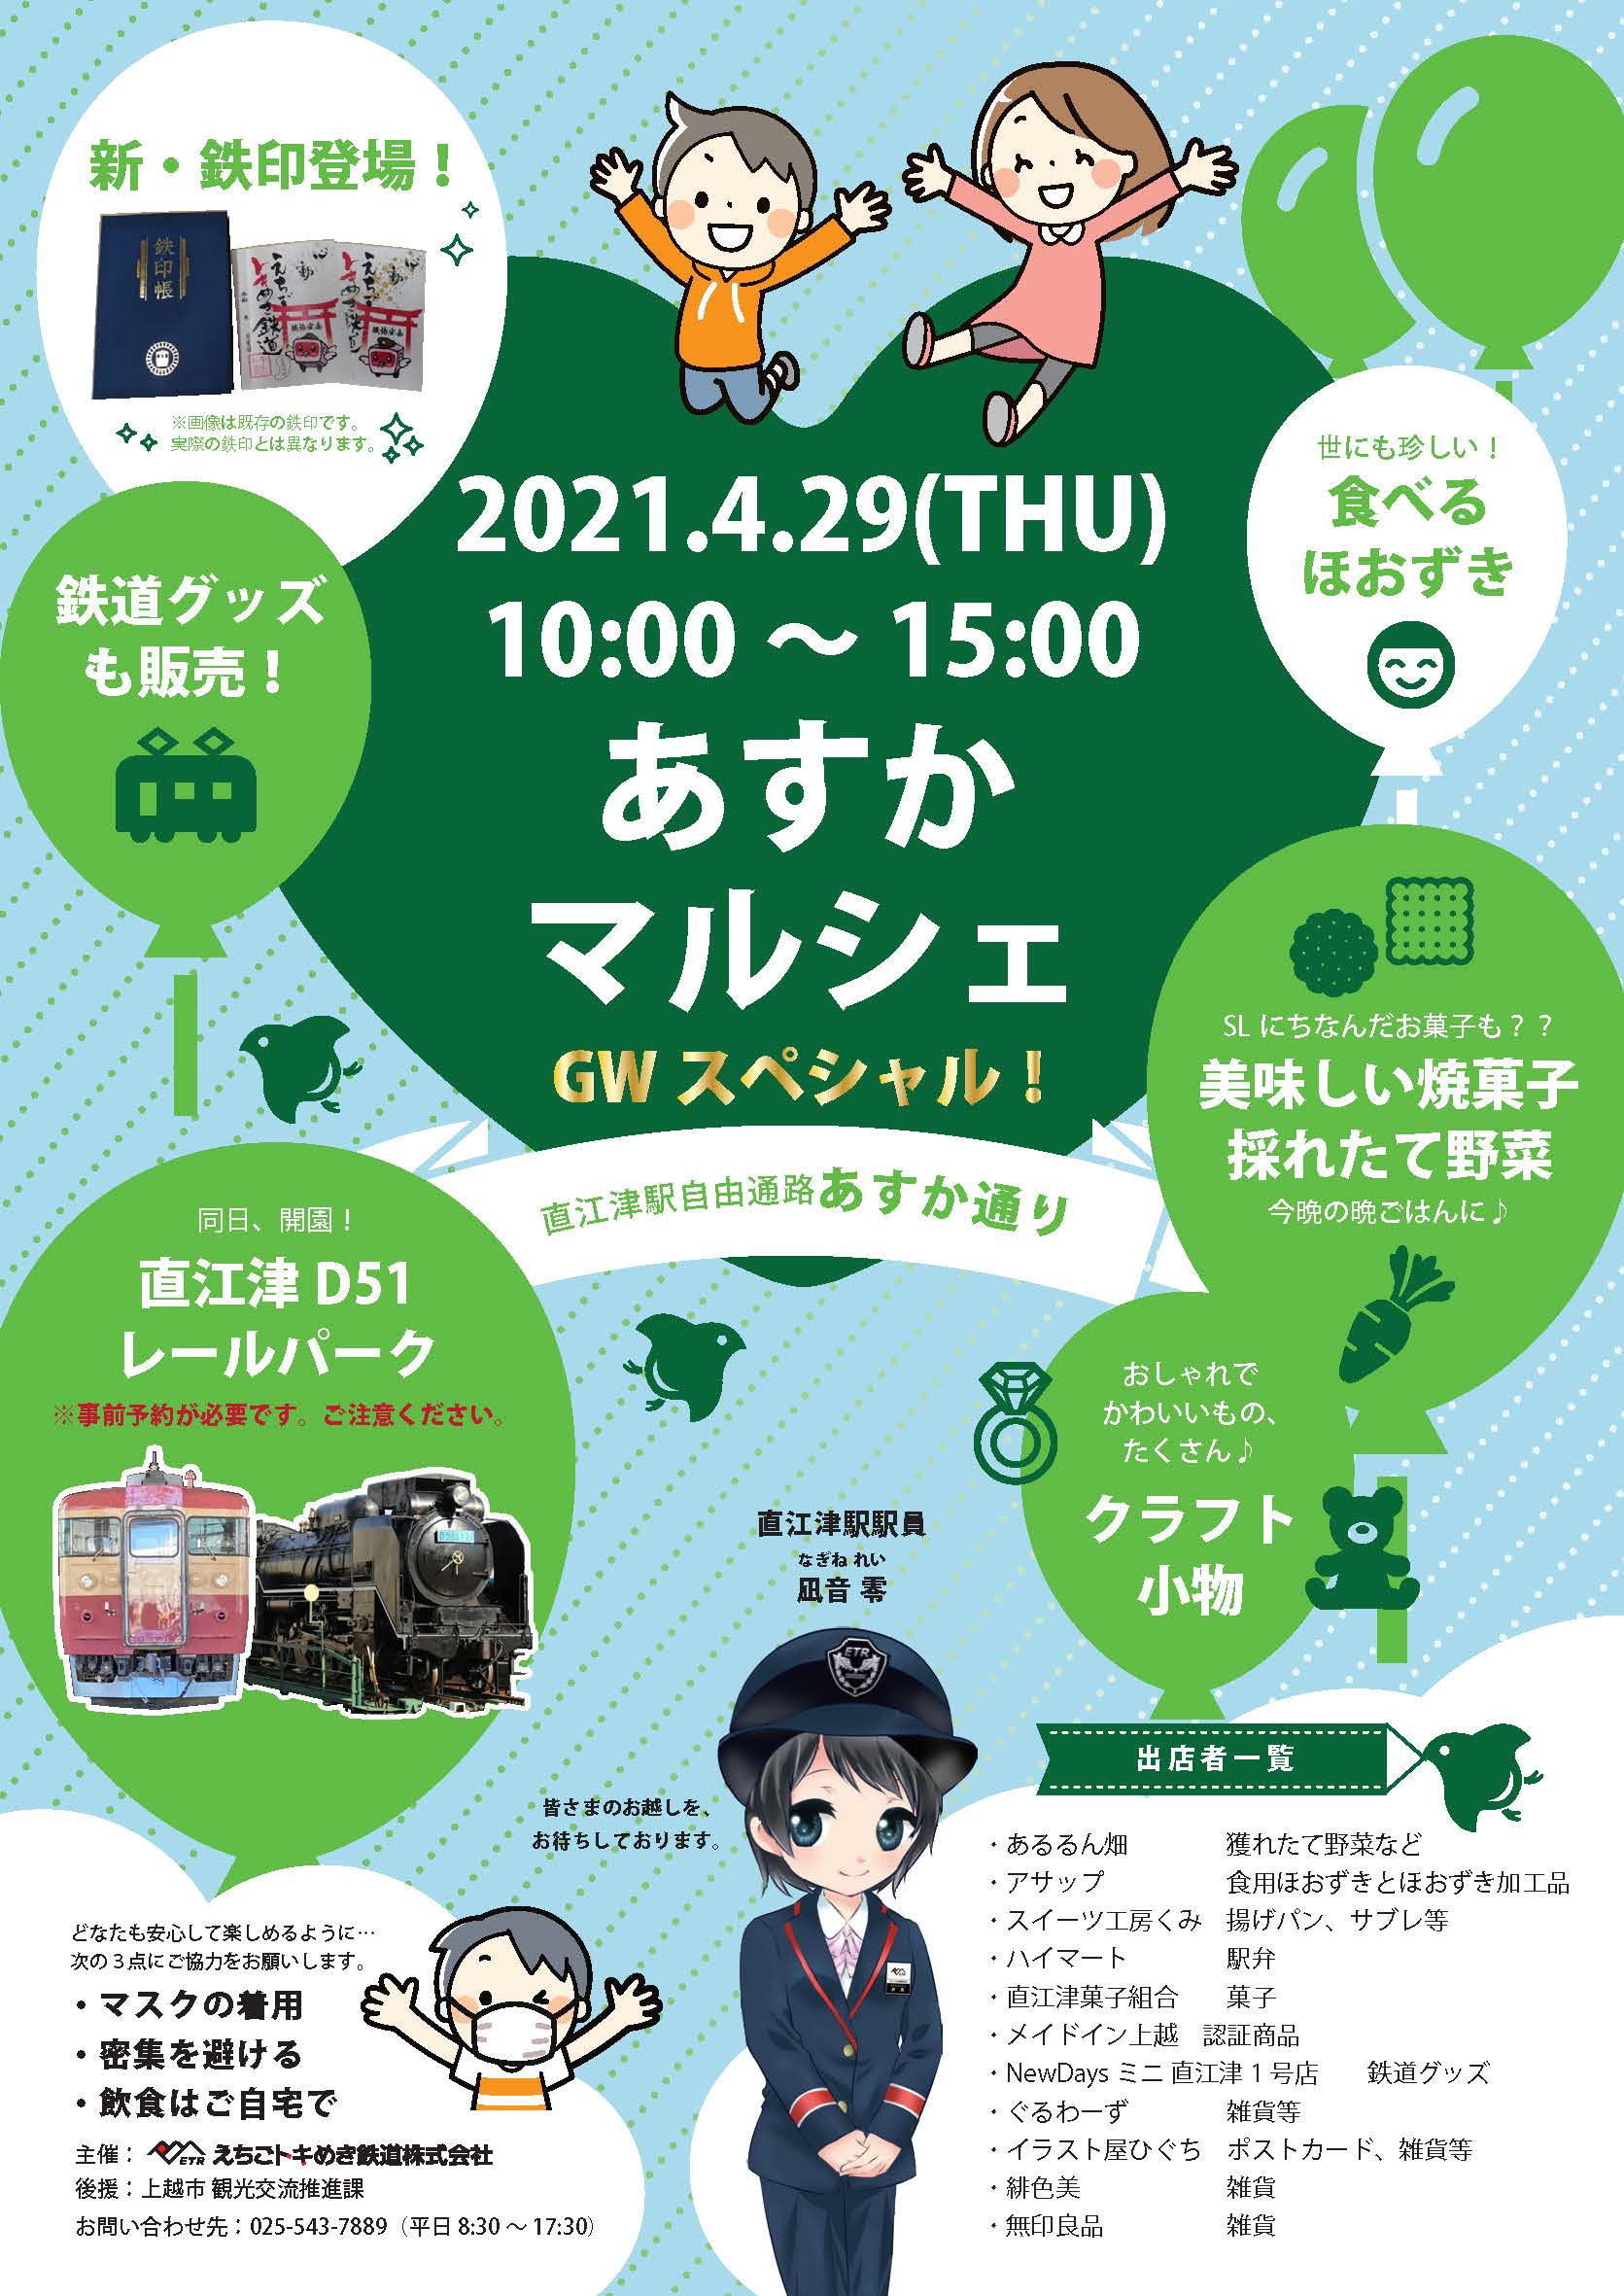 トキ鉄 Gwは あすかマルシェ 4 29 鉄道まつり 5 5 開催 イベント 上越妙高タウン情報